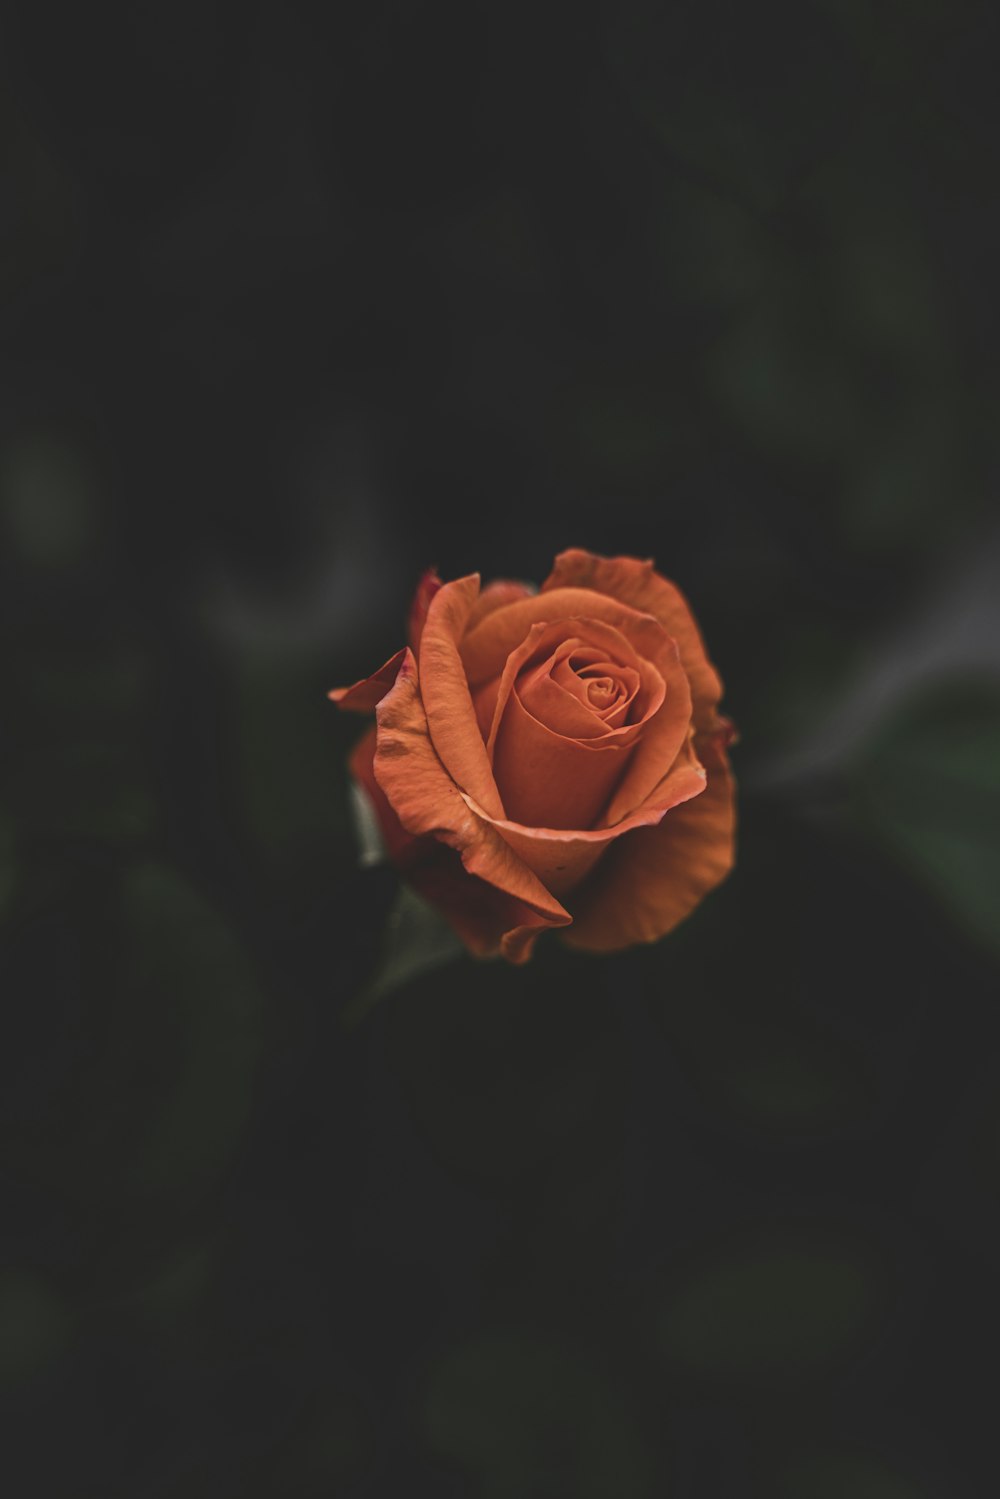 Hãy chiêm ngưỡng vẻ đẹp ngọt ngào của hoa hồng cam - một sắc màu tươi sáng trong cả thế giới hoa.